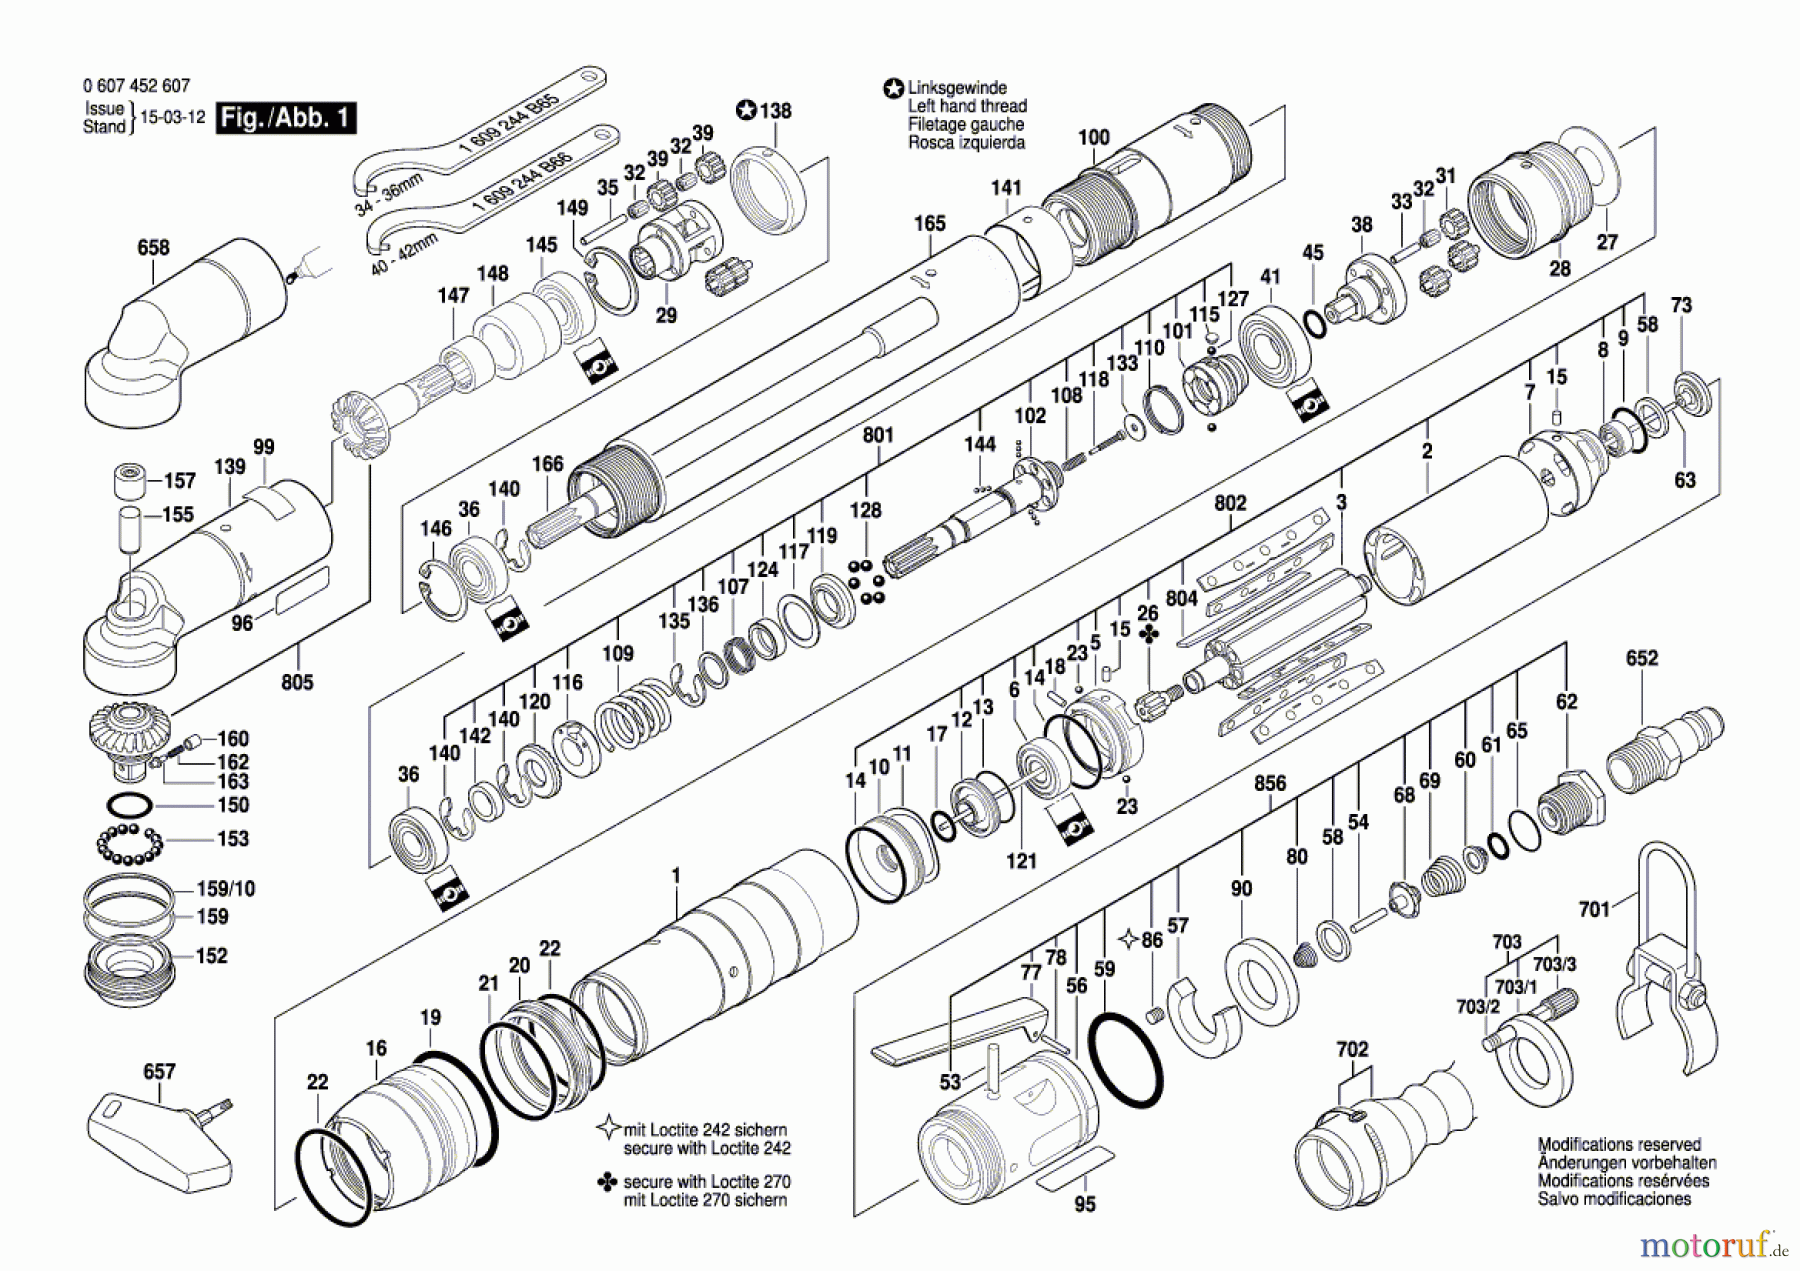  Bosch Werkzeug Pw-Schrauber-Ind 550 WATT-SERIE Seite 1